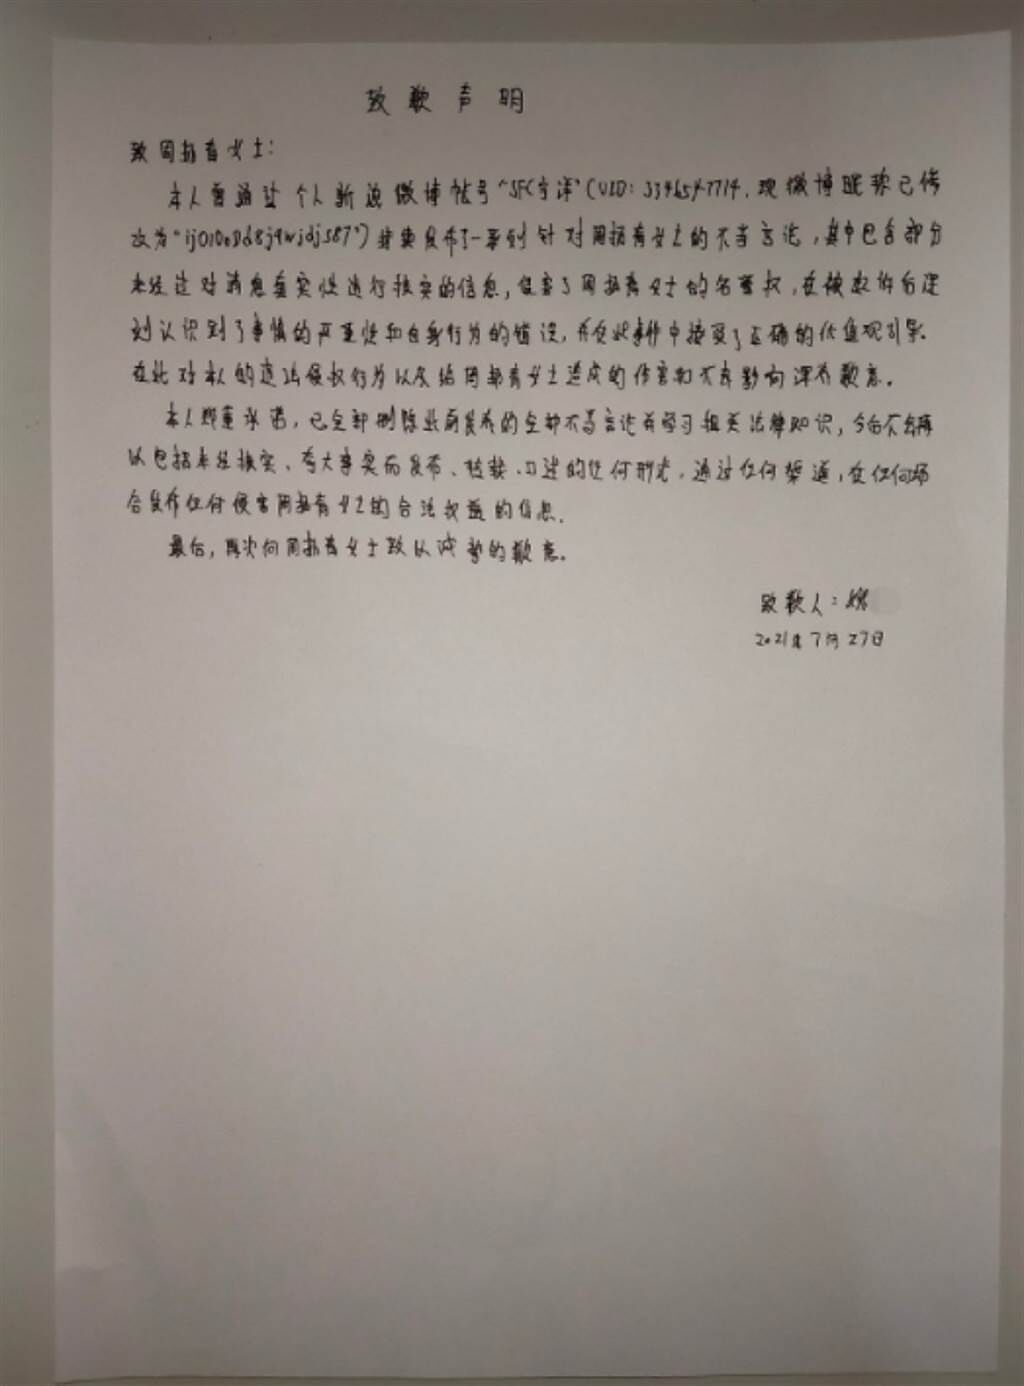 被告酸民也在微博發布道歉聲明。(圖/ 摘自周揚青工作室微博)